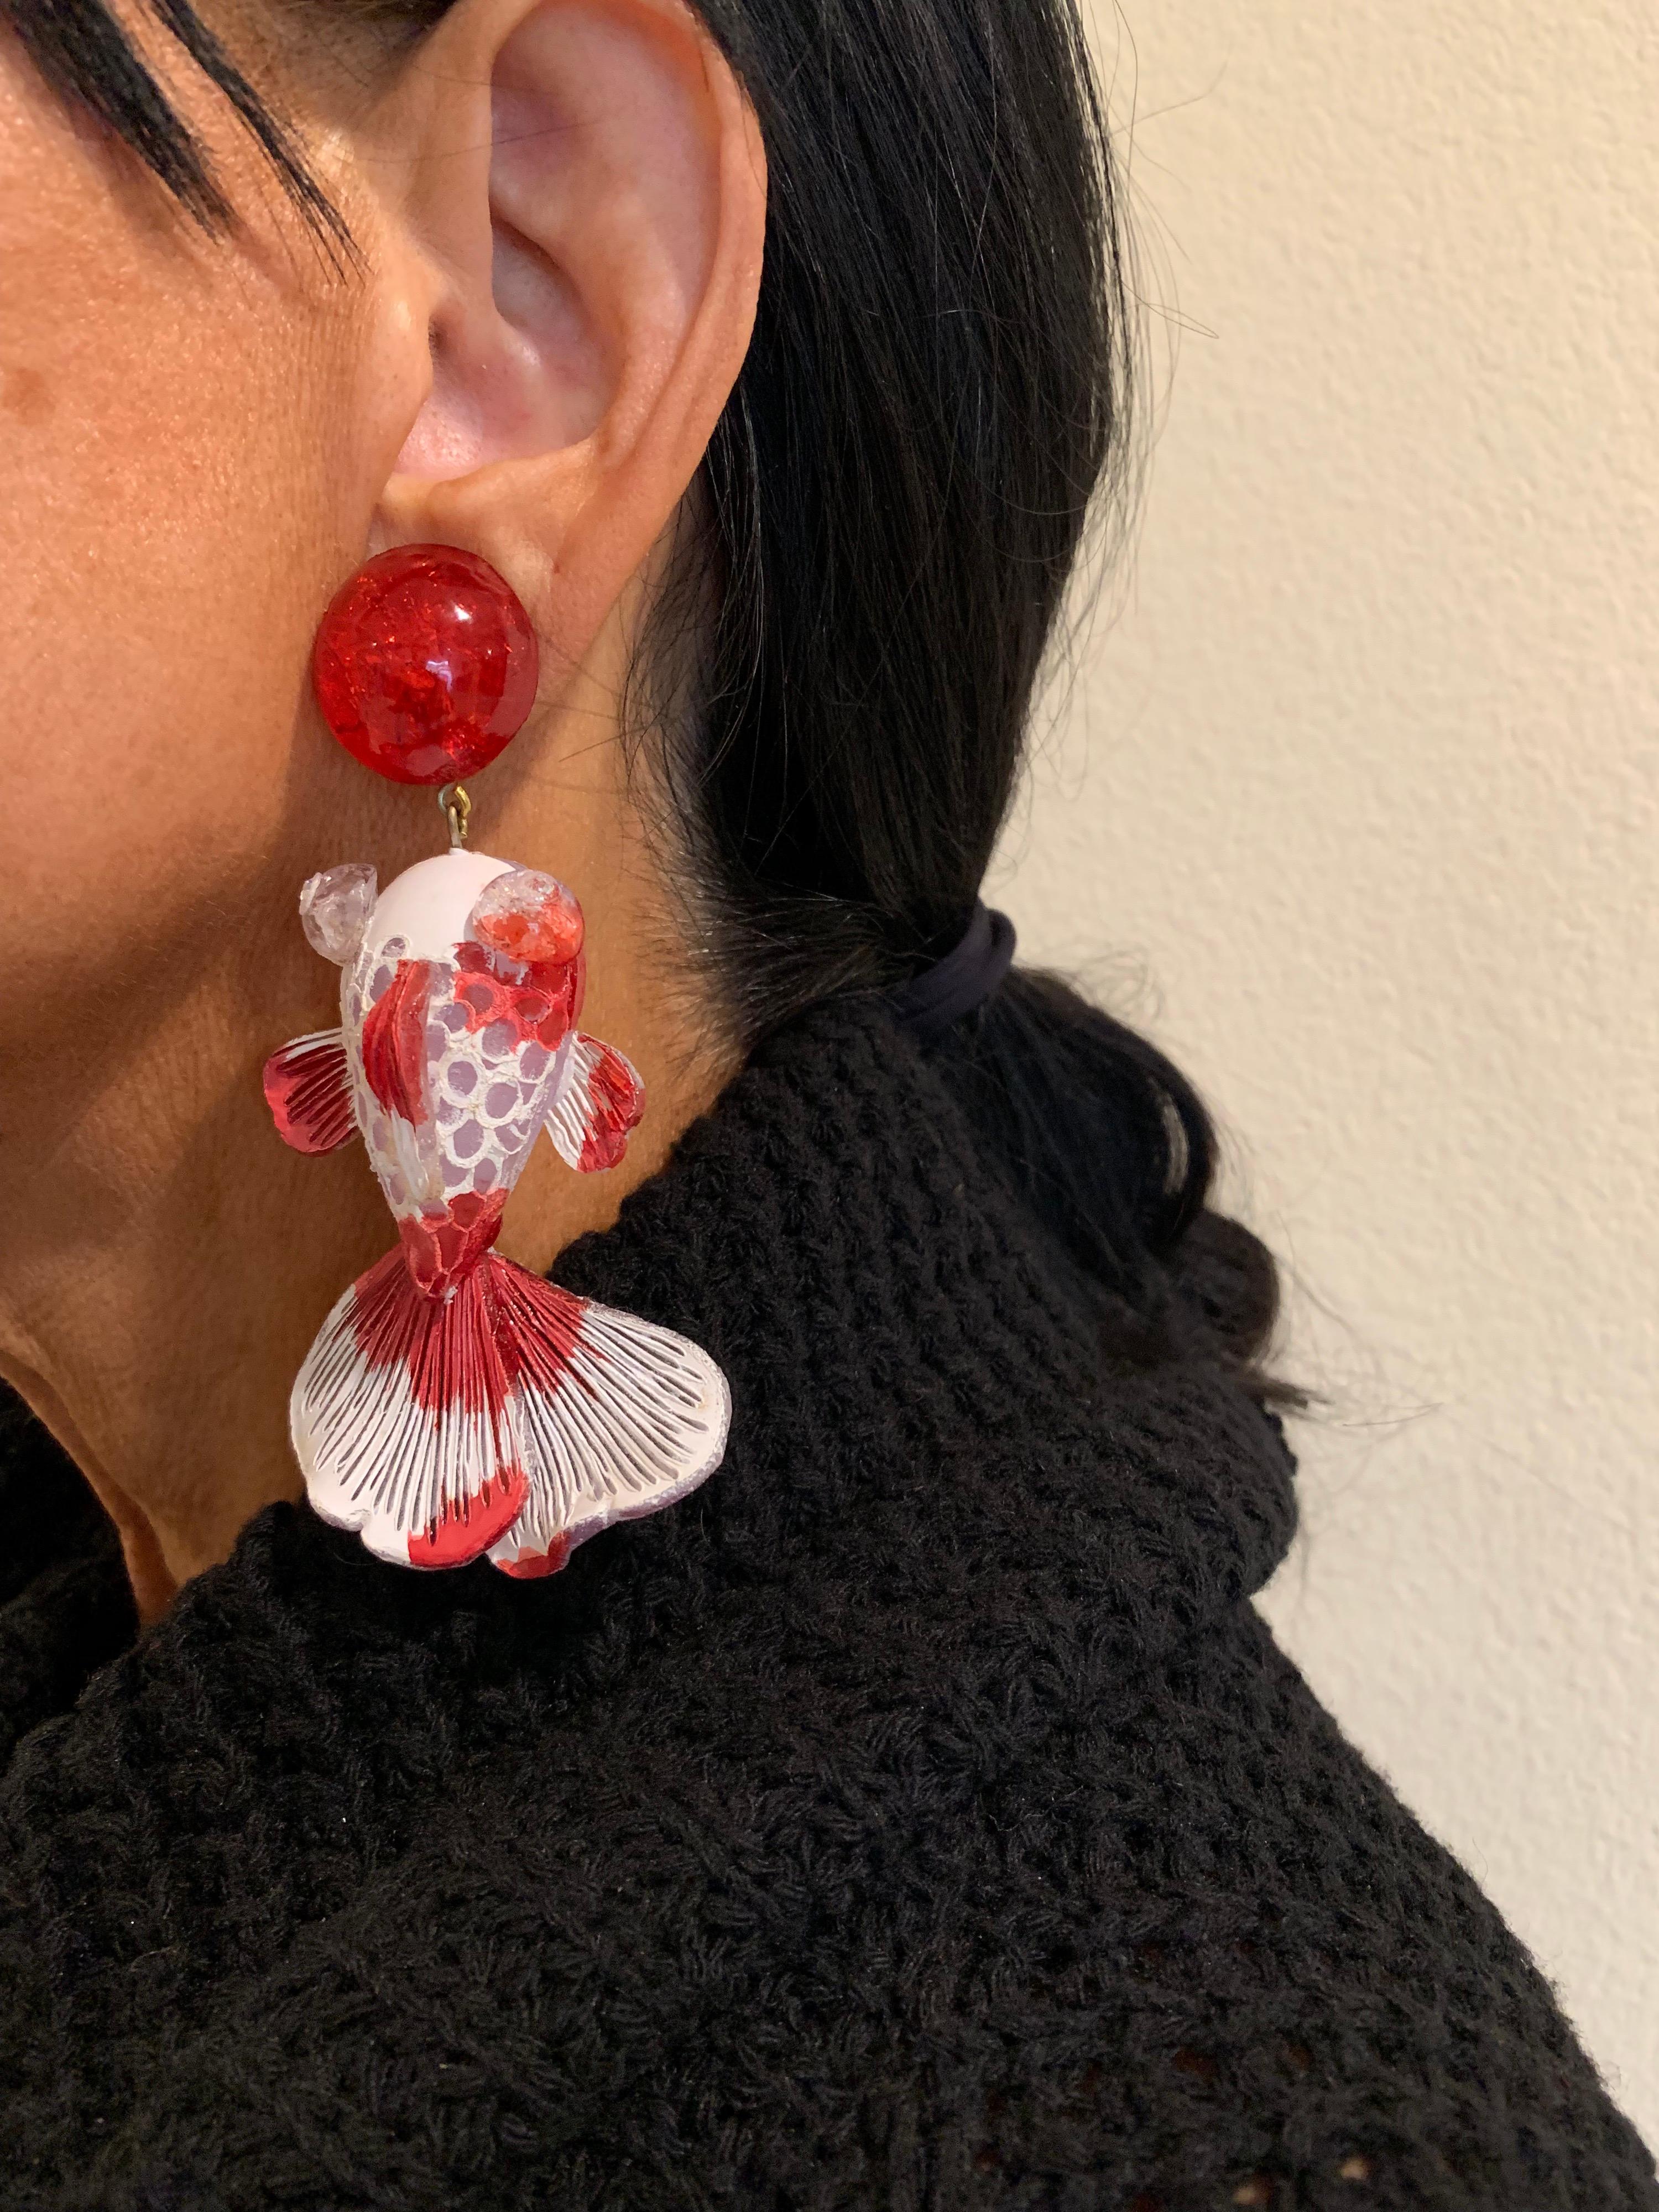 koi fish earrings